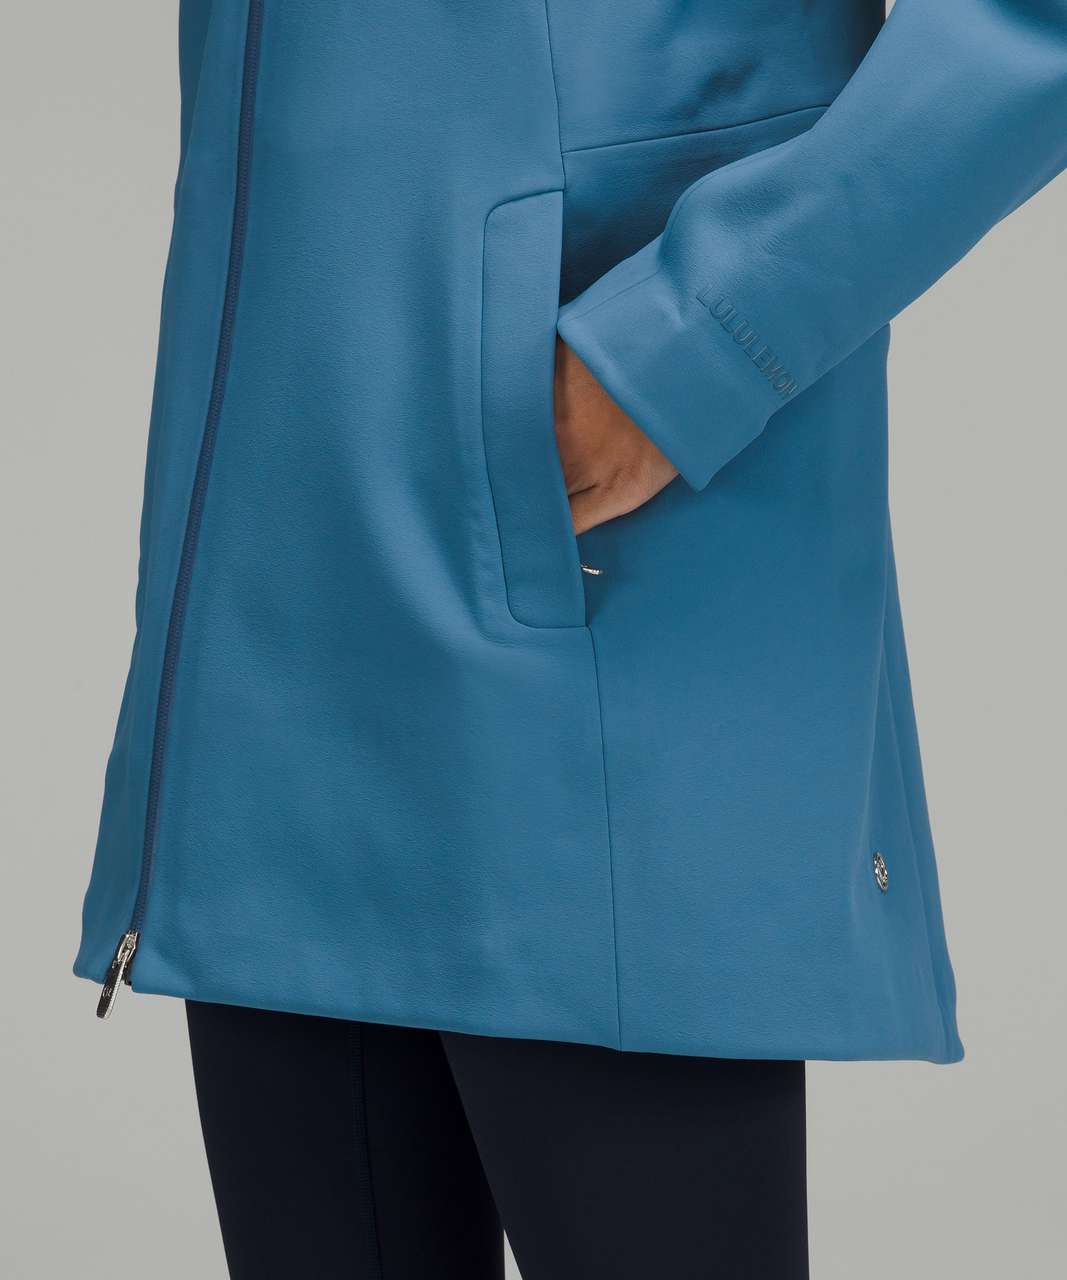 New Lululemon Cross Chill Jacket RepelShell size 6 Sheer Blue-LW4BOHS SHRB